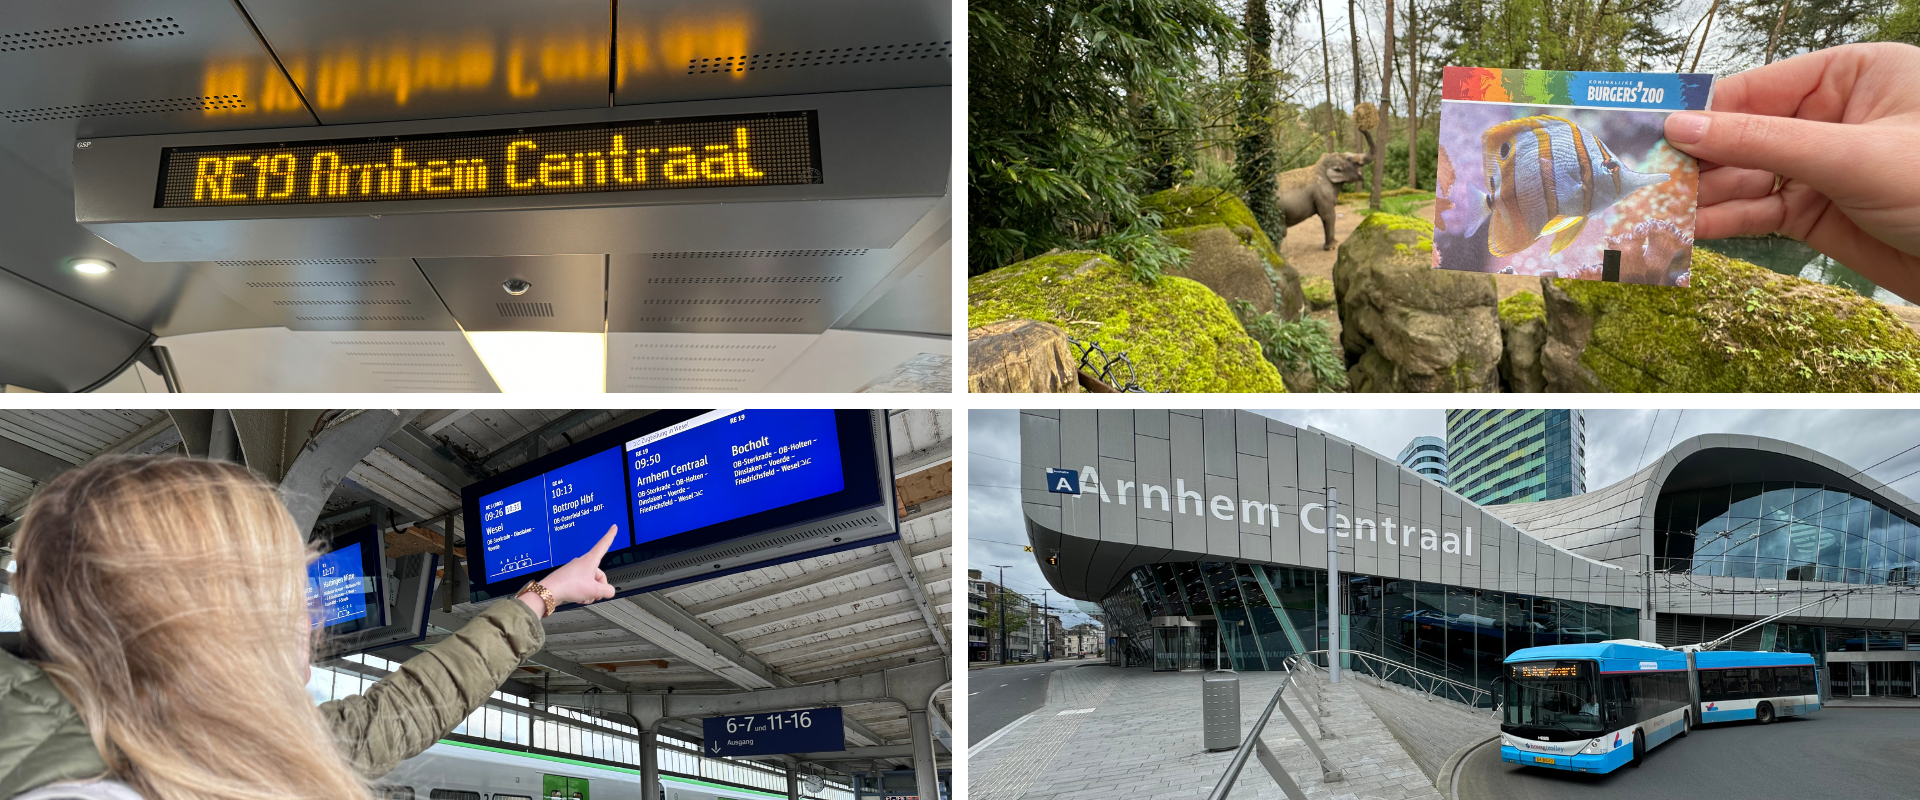 Vier Collagen zeigen verschiedene Eindrücke von der Fahrt mit dem Zug nach Arnhem Centraal.